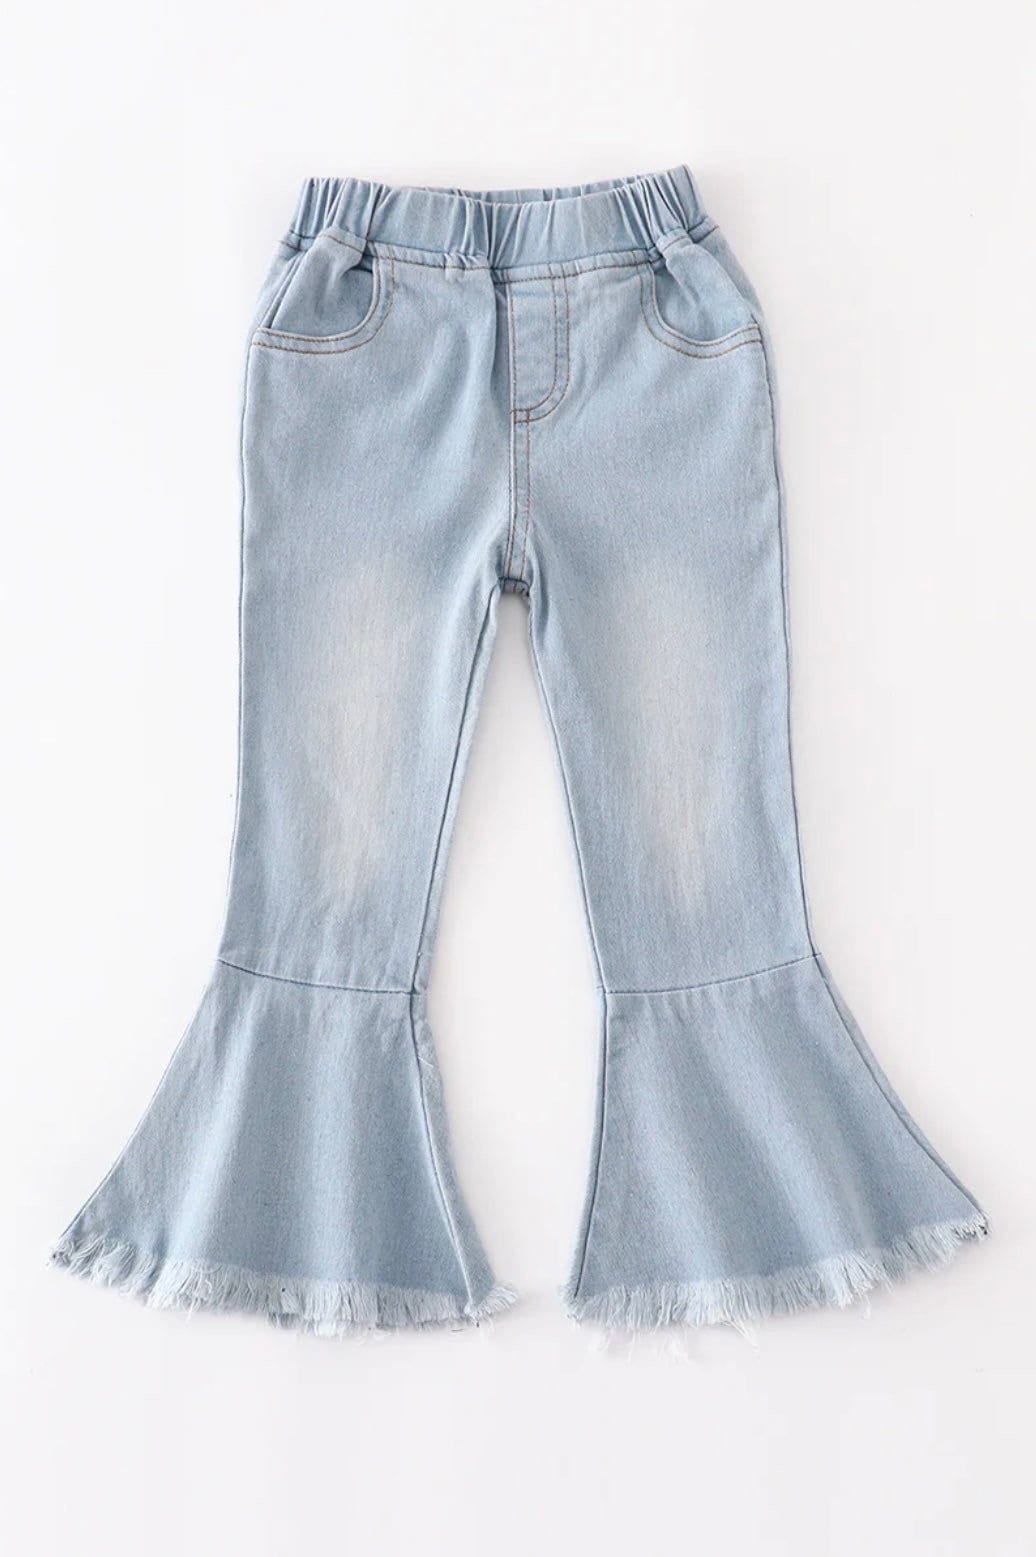 Small Town Girl High-Waist Bell Bottom Jeans - ShopperBoard